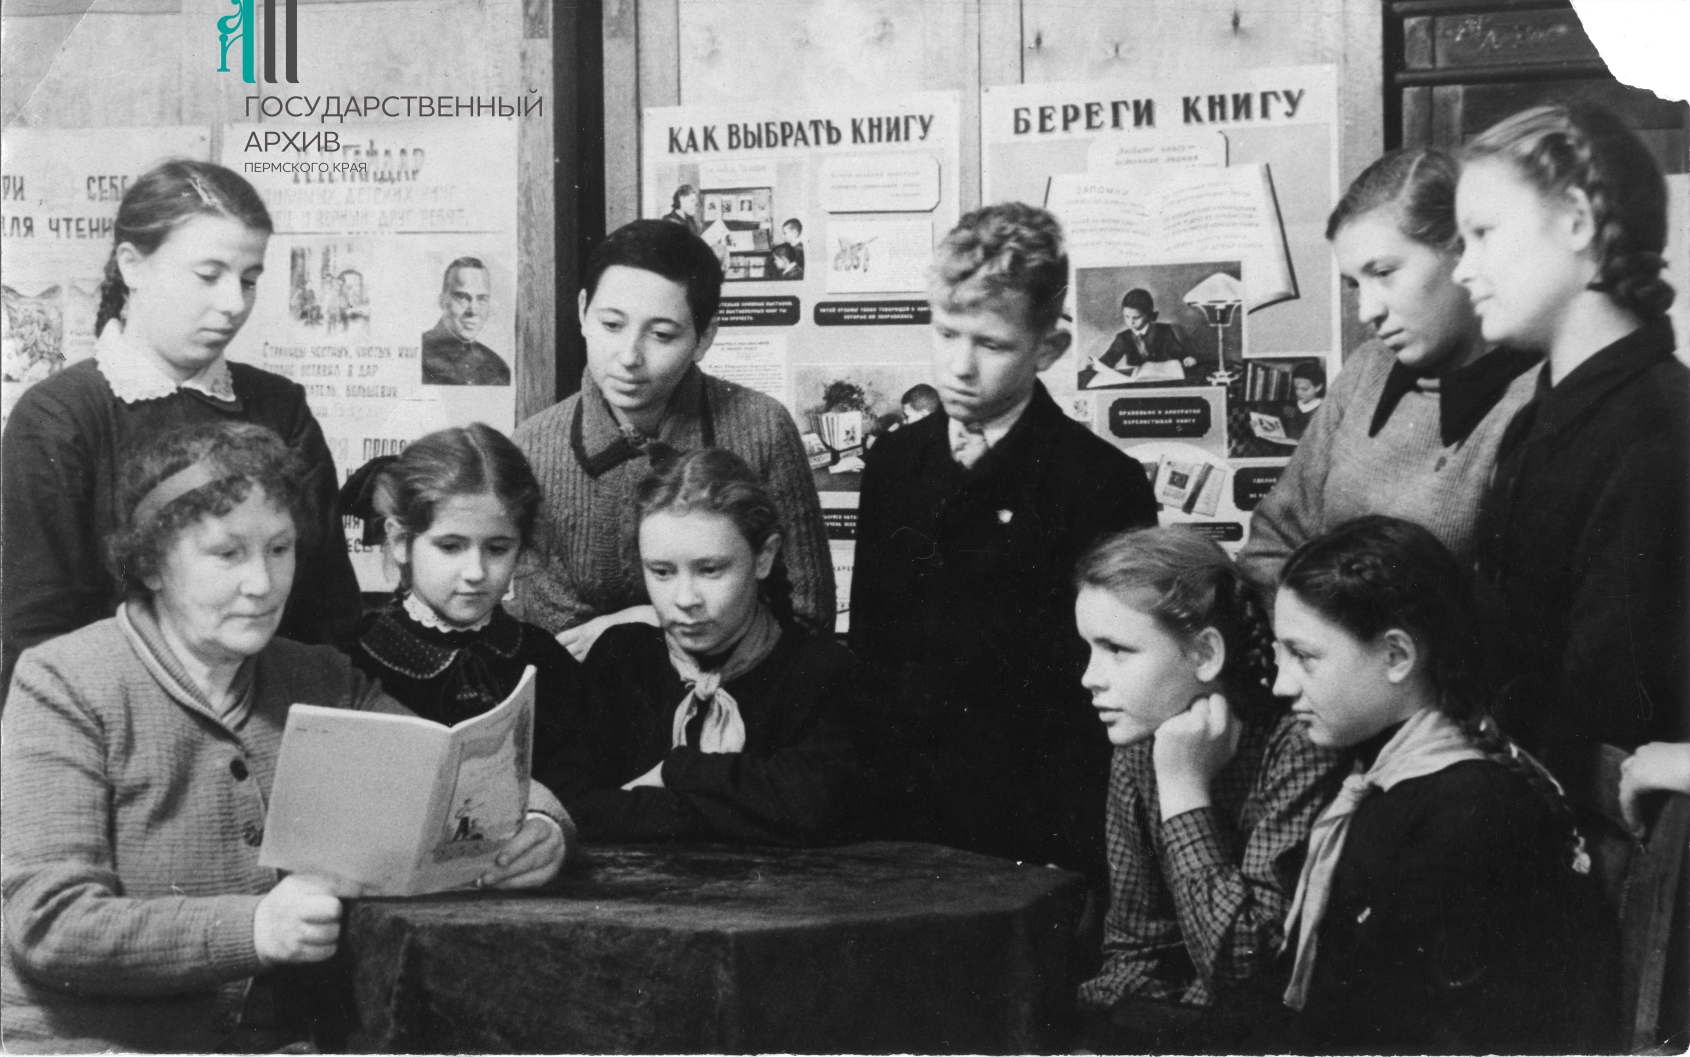 Ф.р-941.Оп.1.Д.176 Е. Ф. Трутнева среди юных читателей в редакции газеты Большевистская смена, 15 декабря 1949 г..jpg